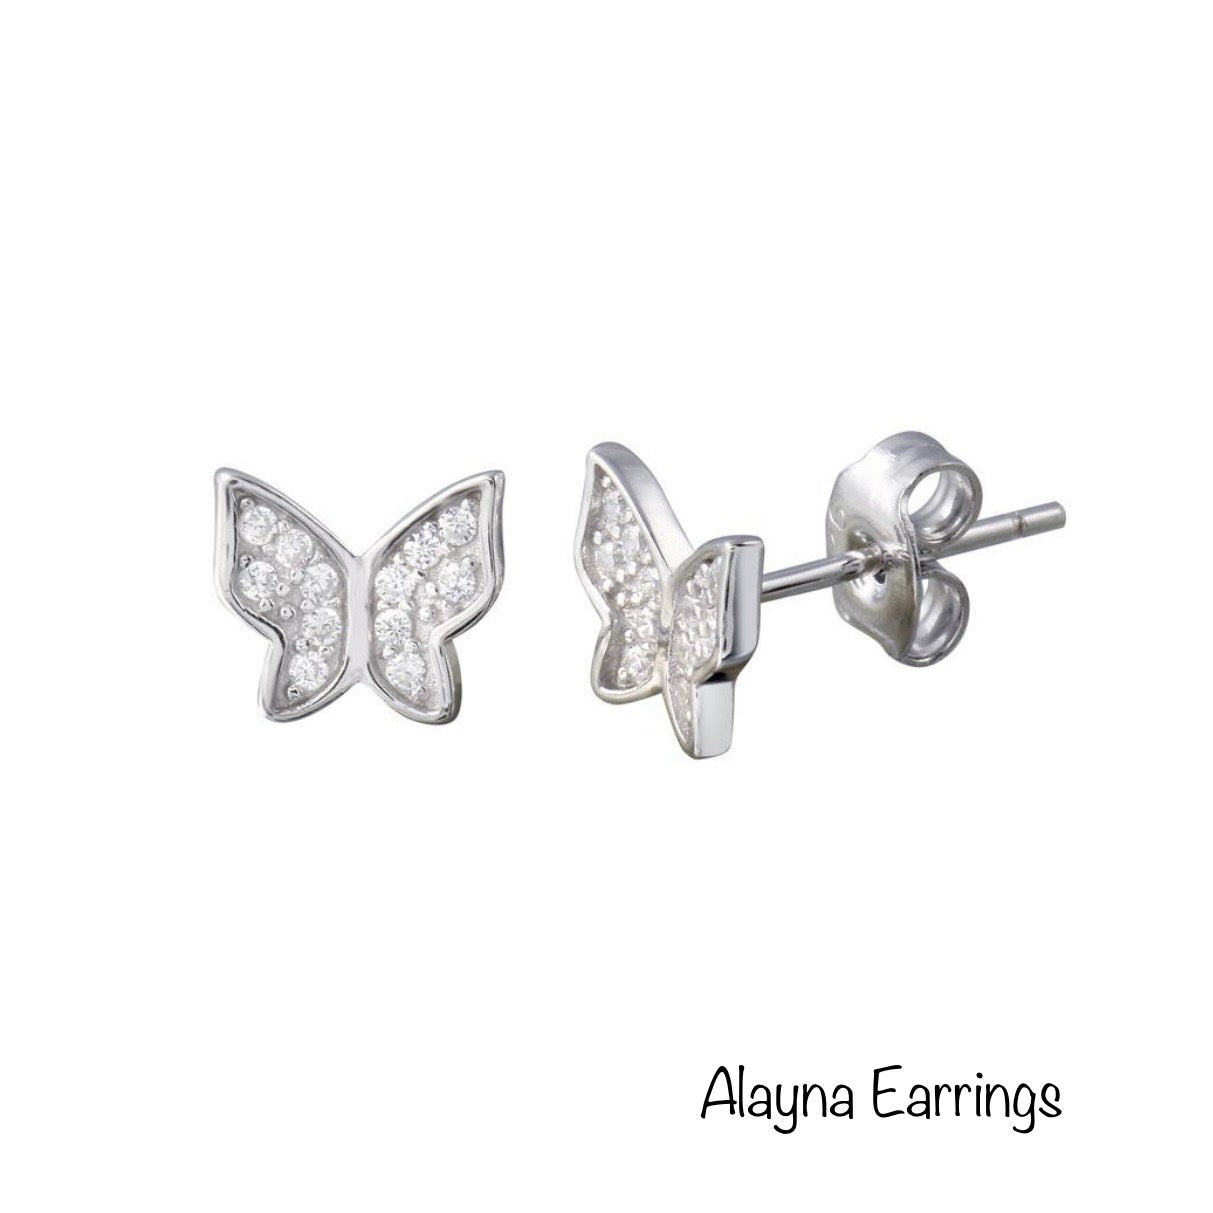 Alayna Earrings